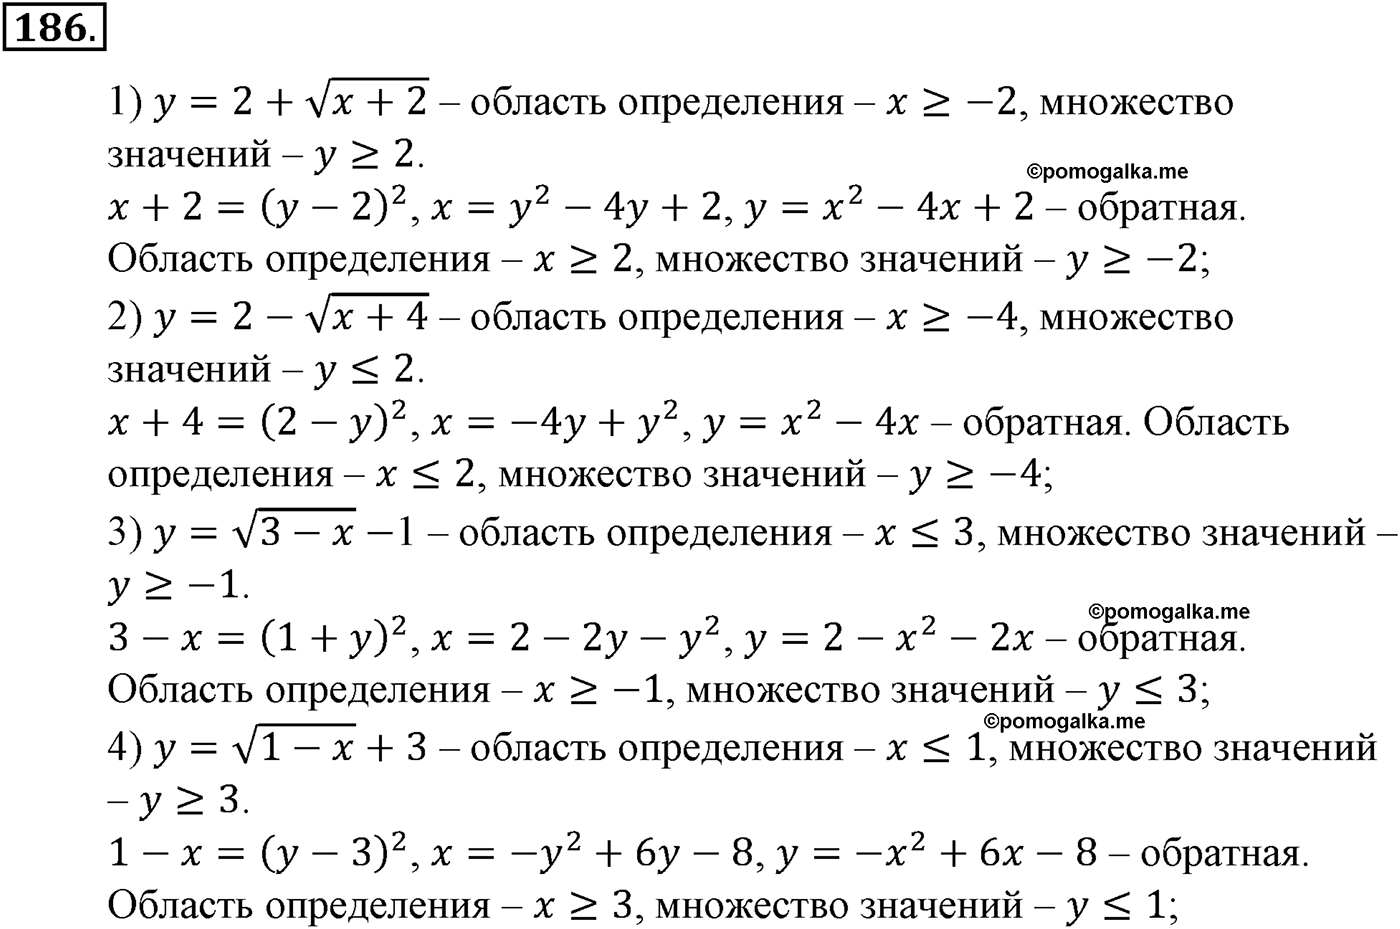 разбор задачи №186 по алгебре за 10-11 класс из учебника Алимова, Колягина